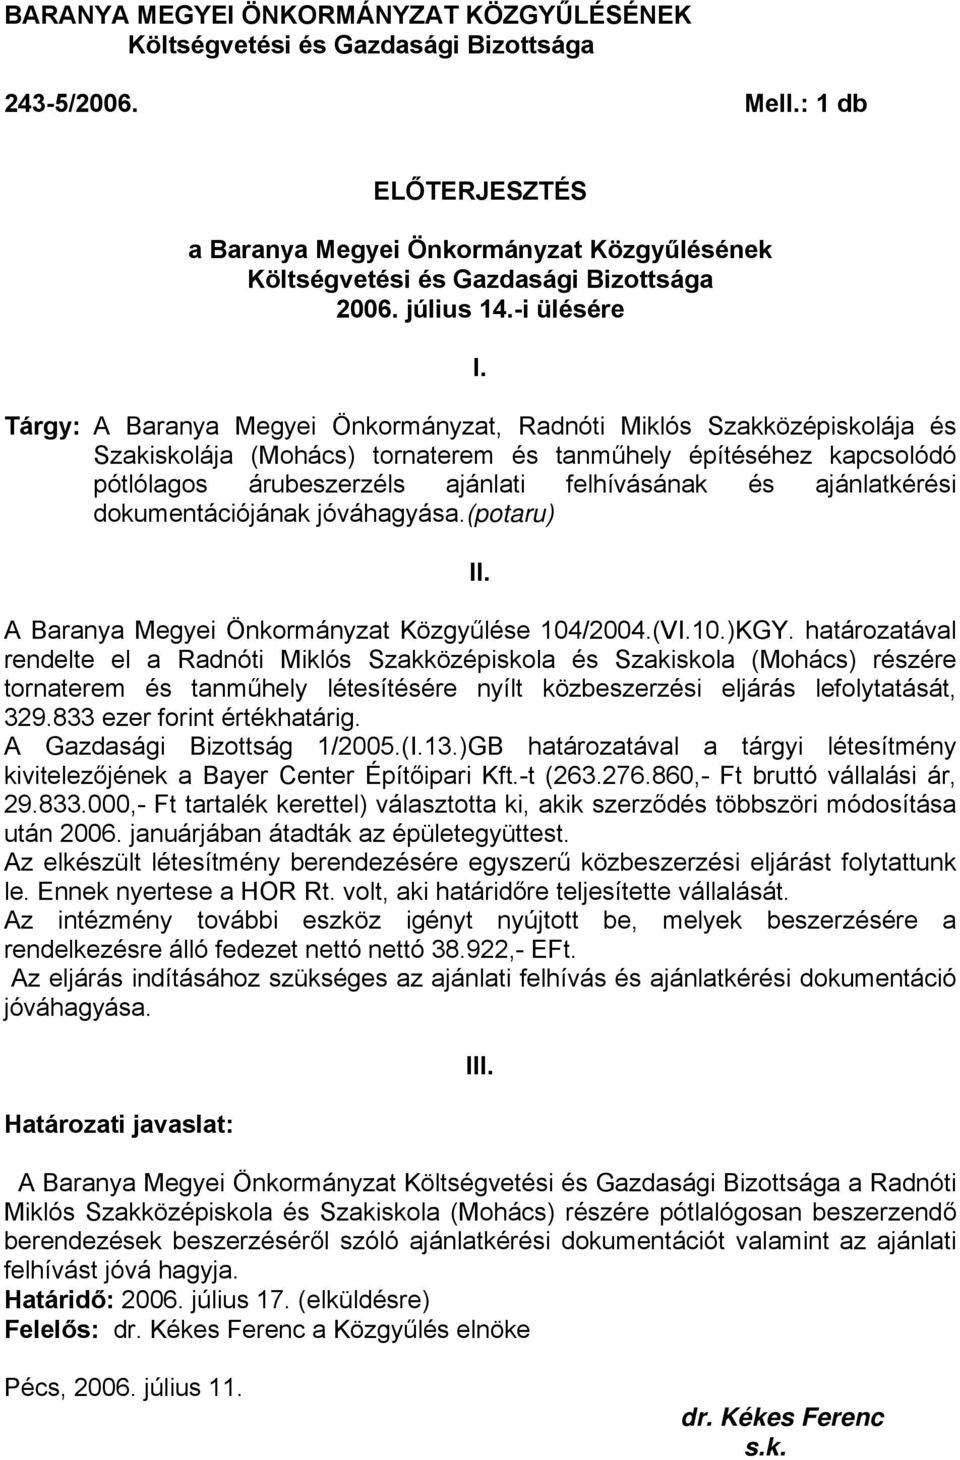 Tárgy: A Baranya Megyei Önkormányzat, Radnóti Miklós Szakközépiskolája és Szakiskolája (Mohács) tornaterem és tanműhely építéséhez kapcsolódó pótlólagos árubeszerzéls ajánlati felhívásának és